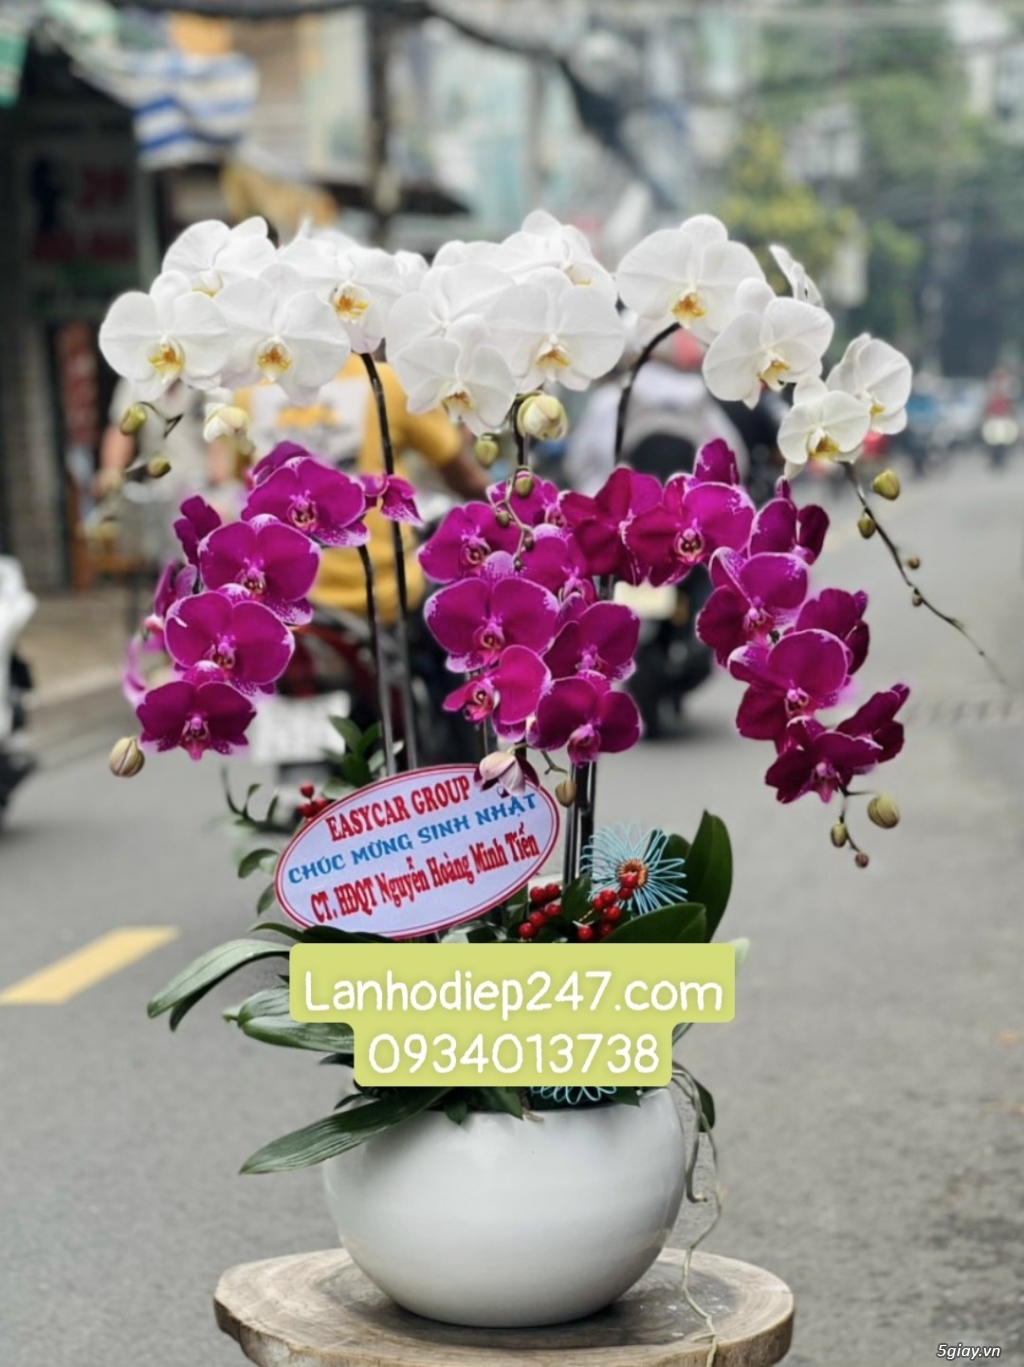 Tư vấn bí quyết tặng hoa theo phong thủy từ Shop Hoa Lan TPHCM 247 - 3